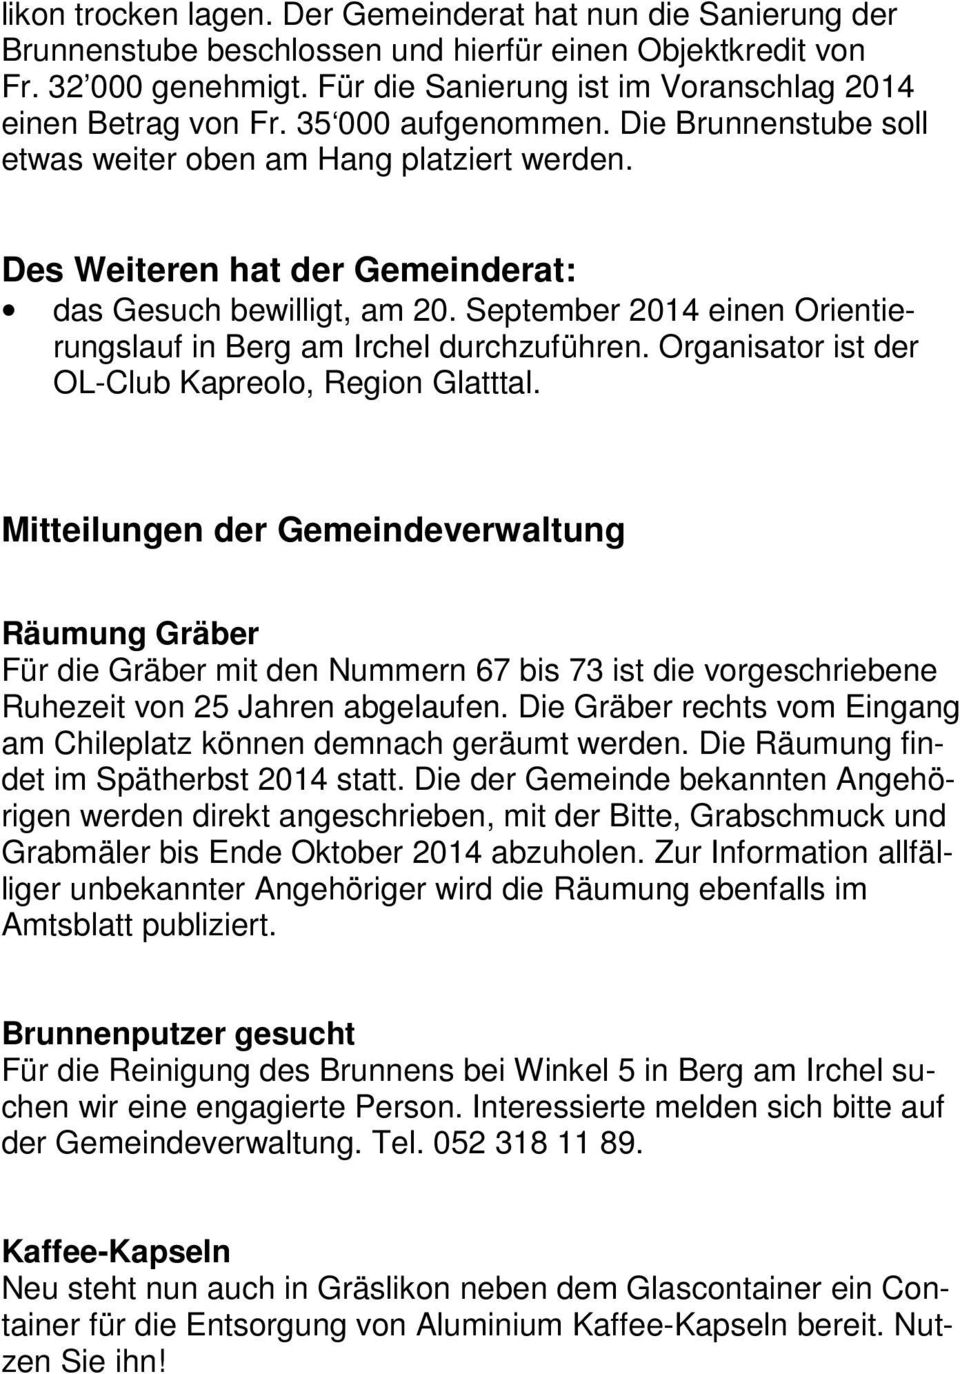 Des Weiteren hat der Gemeinderat: das Gesuch bewilligt, am 20. September 2014 einen Orientierungslauf in Berg am Irchel durchzuführen. Organisator ist der OL-Club Kapreolo, Region Glatttal.